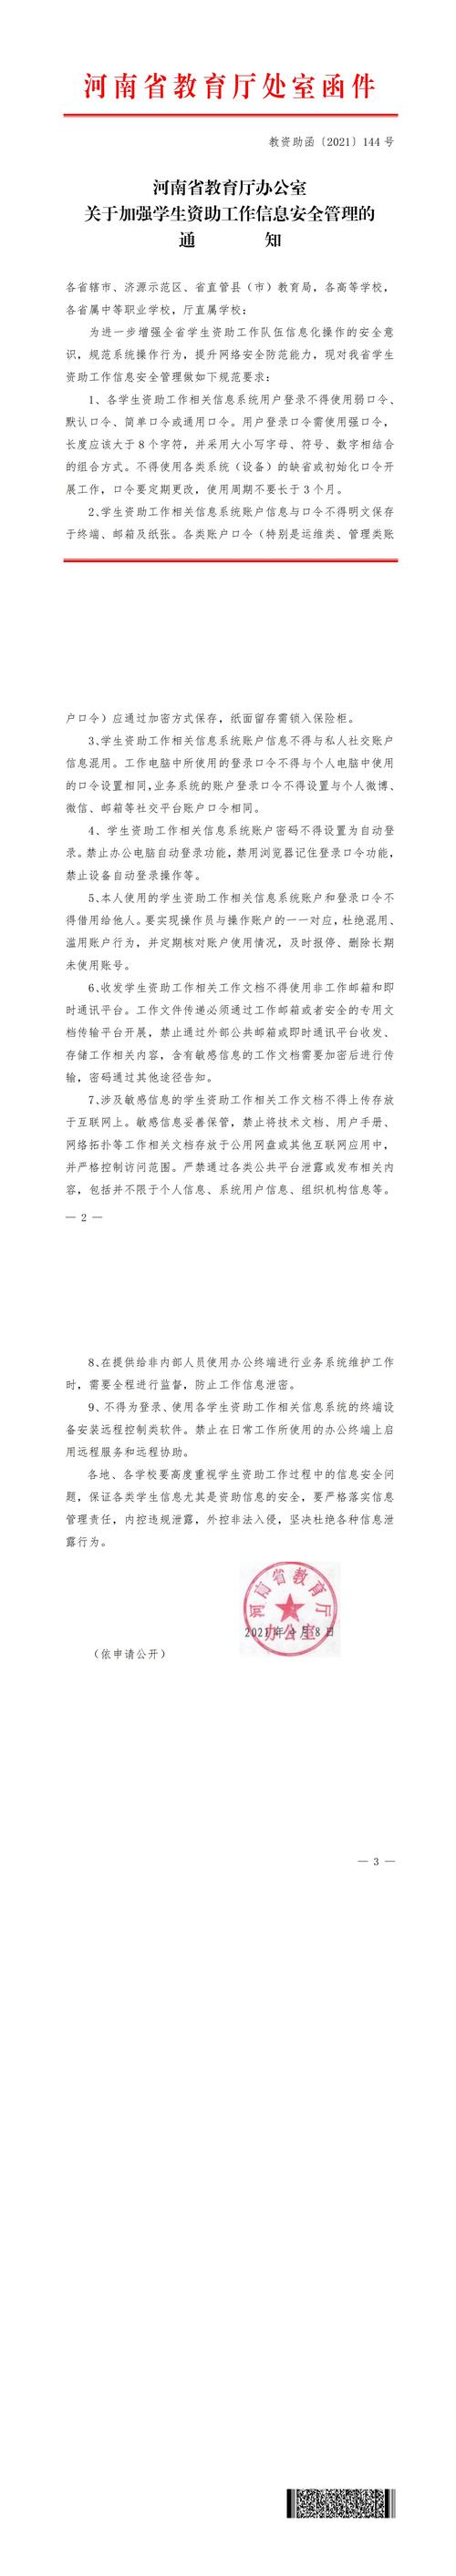 （教资助函〔2021〕144号）河南省教育厅办公室关于加强学生资助工作信息安全管理的通知_00